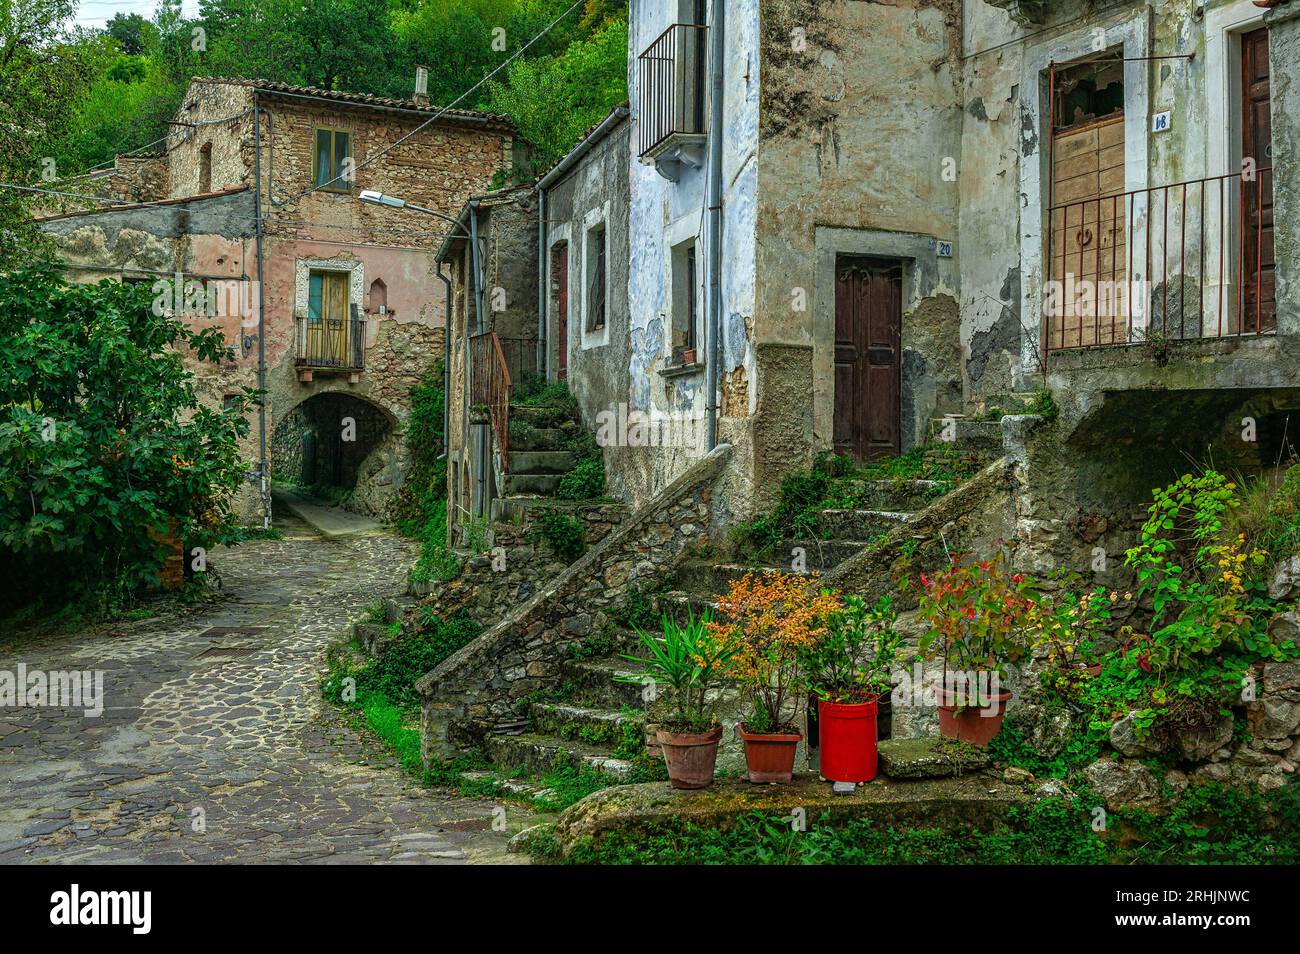 Alte Häuser mit Bögen und Durchgängen im alten mittelalterlichen Dorf Prezza. Prezza, Provinz L'Aquila, Abruzzen, Italien, Europa Stockfoto